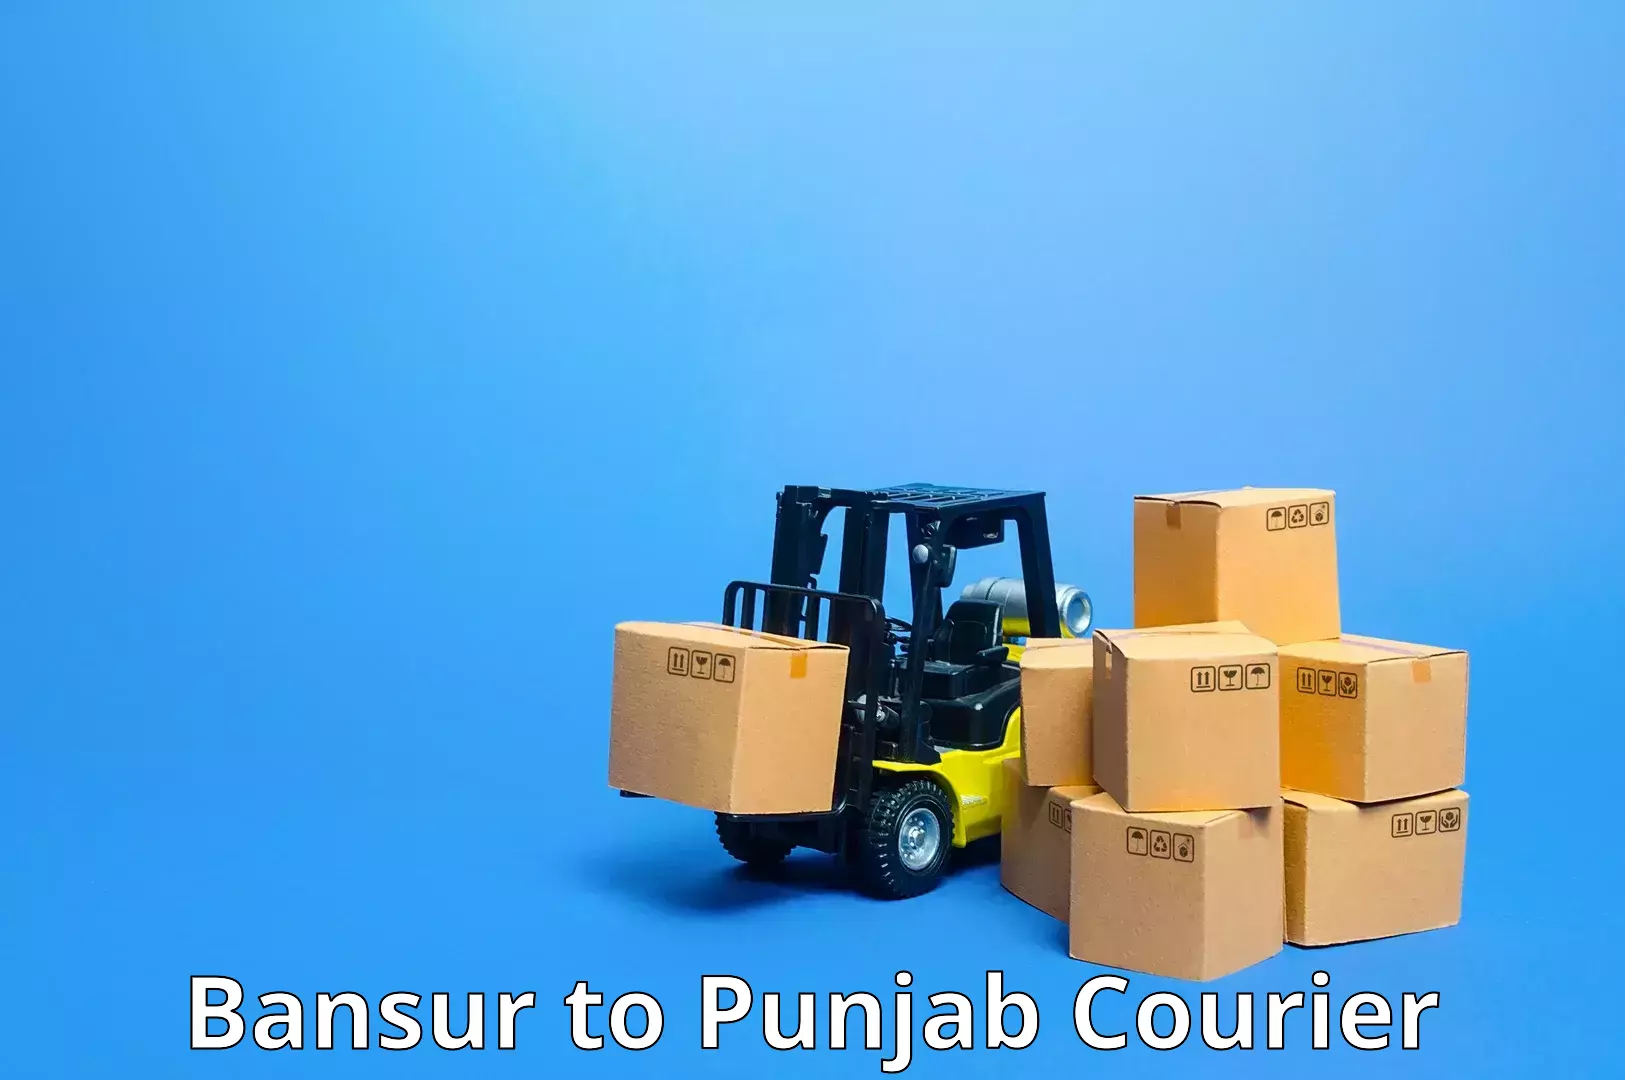 Reliable courier service Bansur to Sangrur